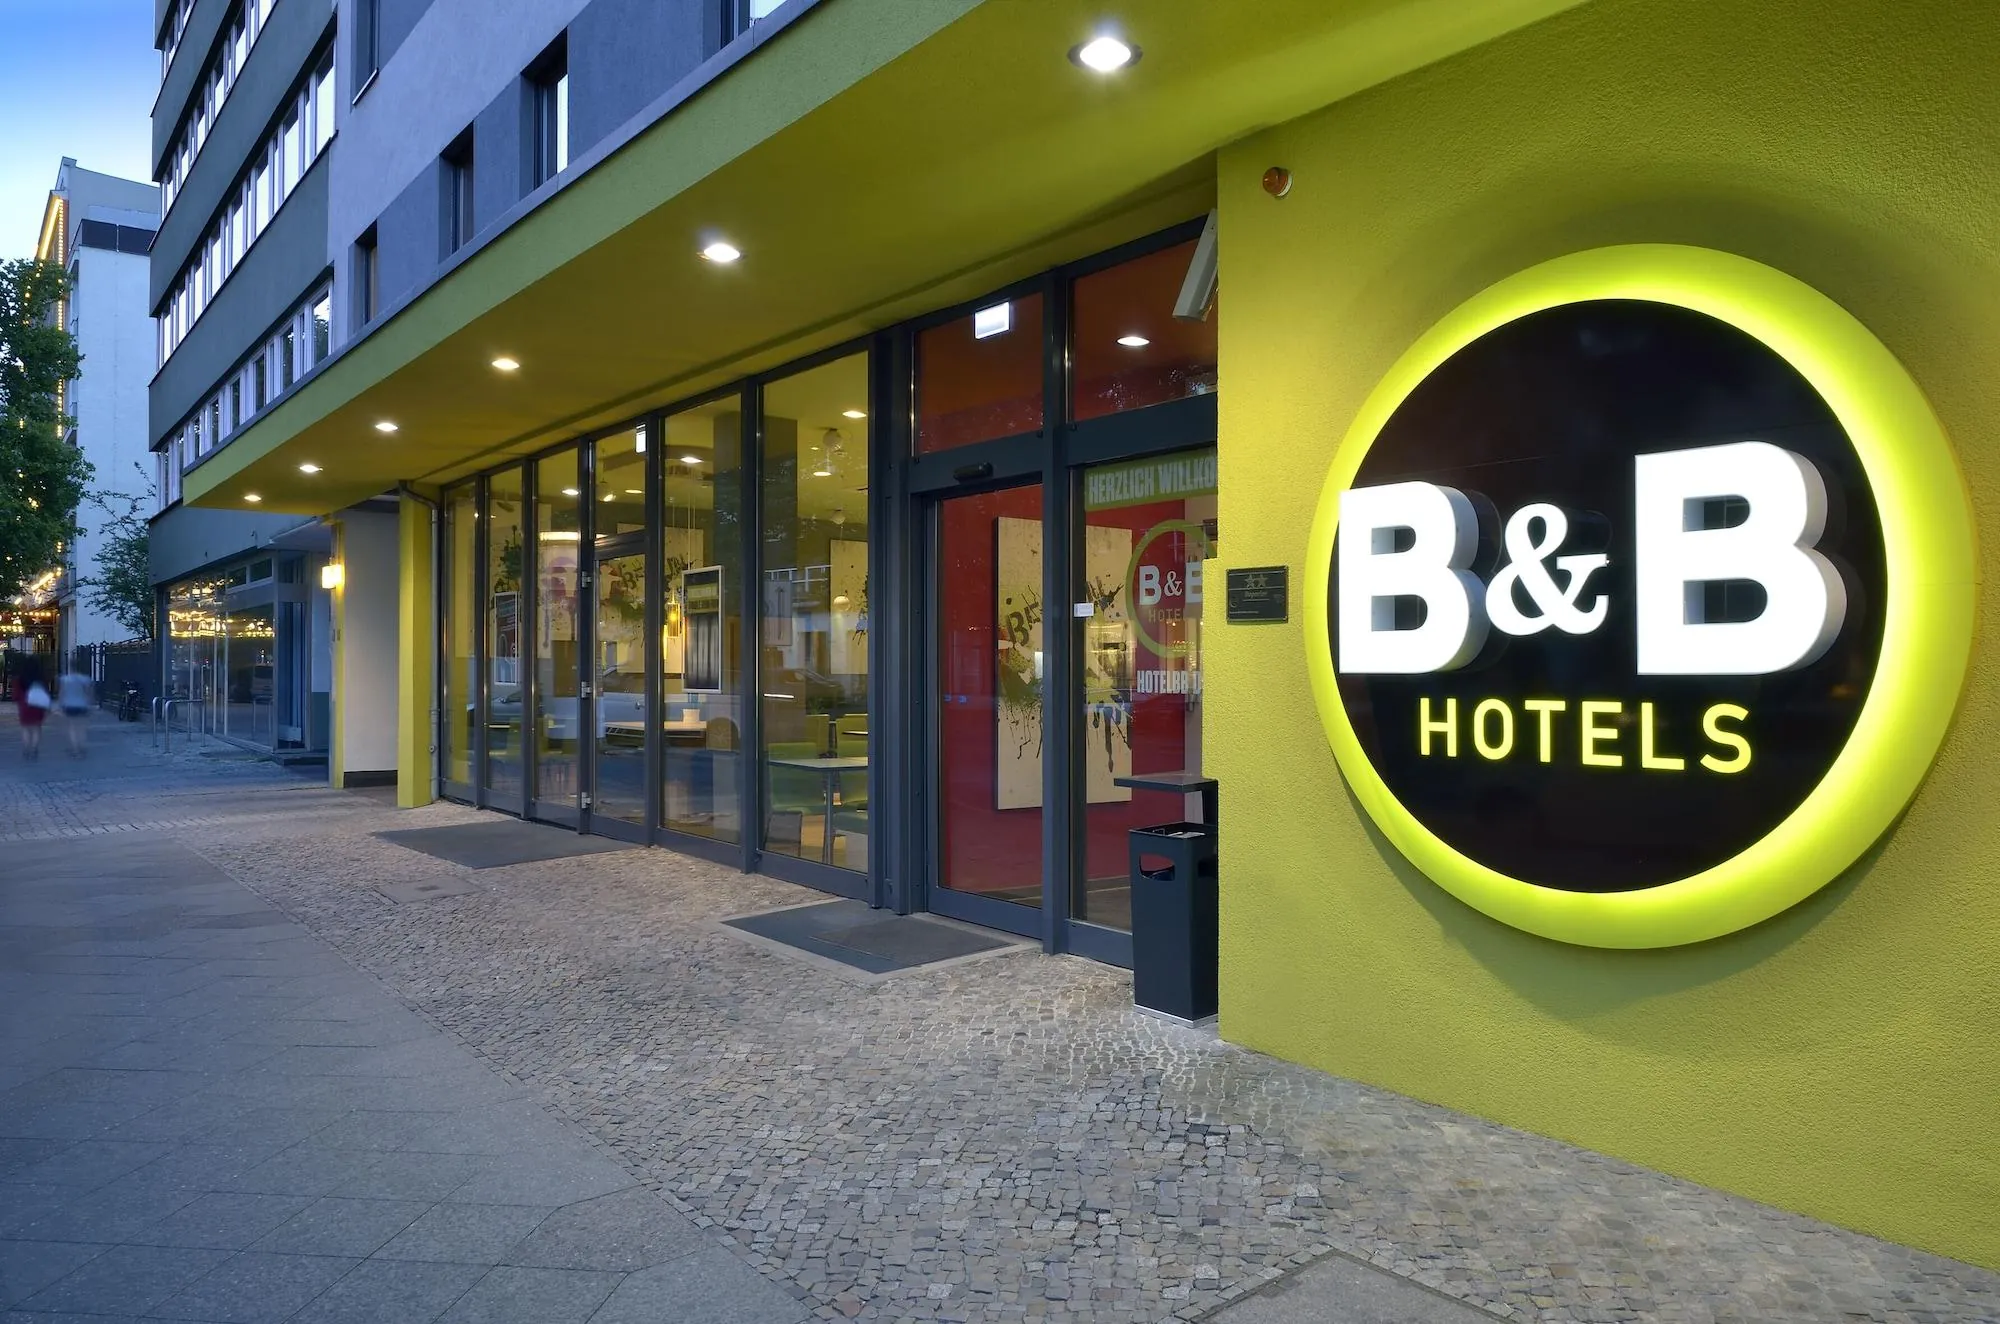 B&B Hotel Berlin-Potsdamer Platz - Außenansicht vom Eingangsbereich mit großem, grünen B&B Logo